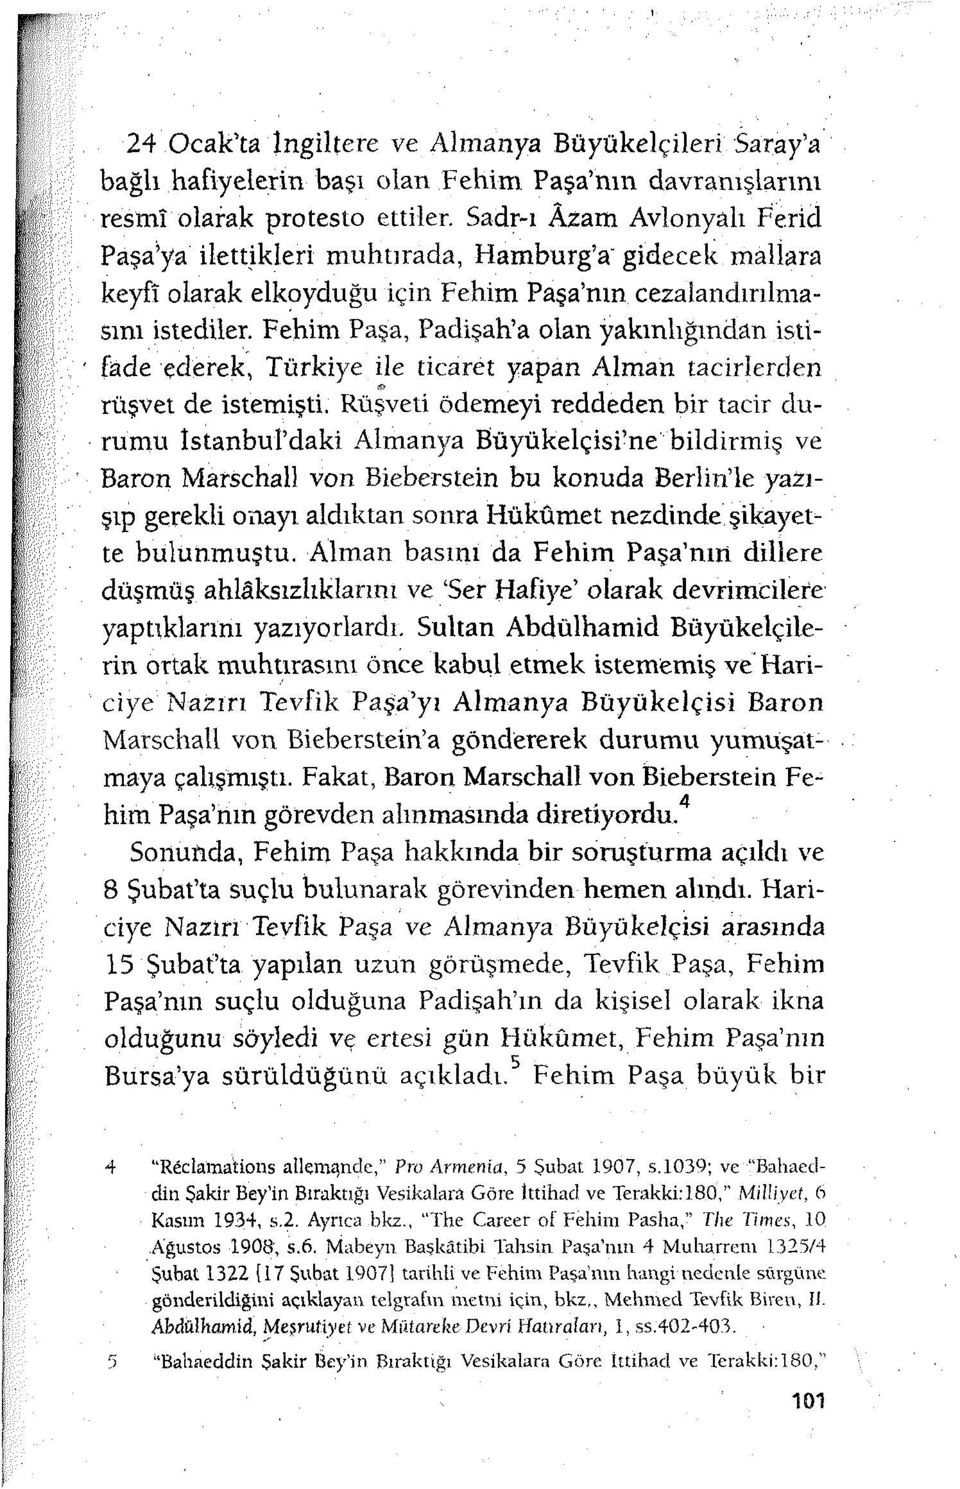 Fehim Paşa, Padişah'a olan yakınlığından istifade ederek, Türkiye ile ticaret yapan Alman tacirlerden rüşvet de istemişti.